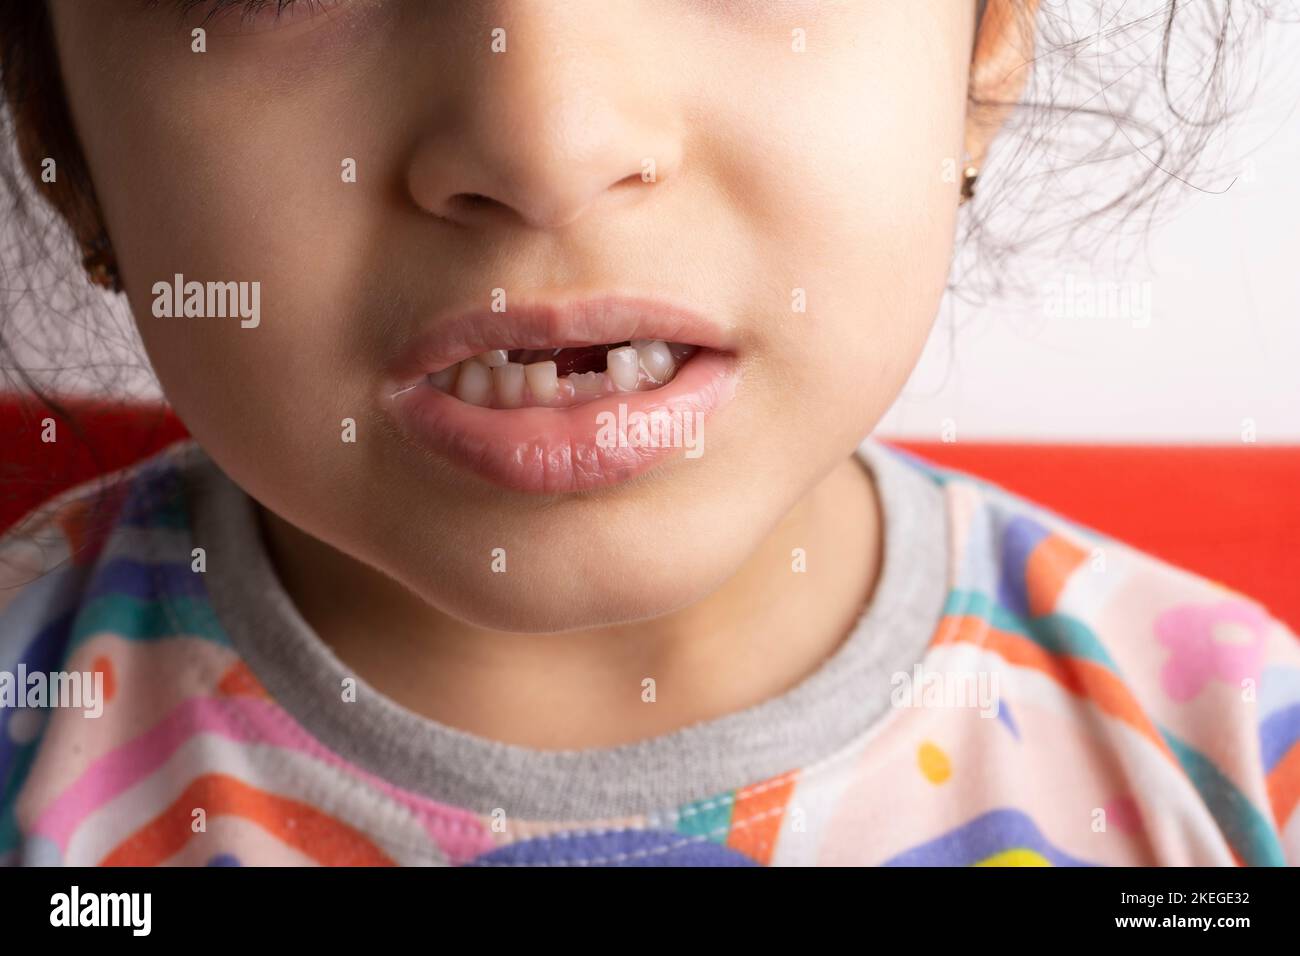 6 Jahre altes kleines Mädchen Porträt mit entfernter Milchzahnstelle - Nahaufnahme Stockfoto